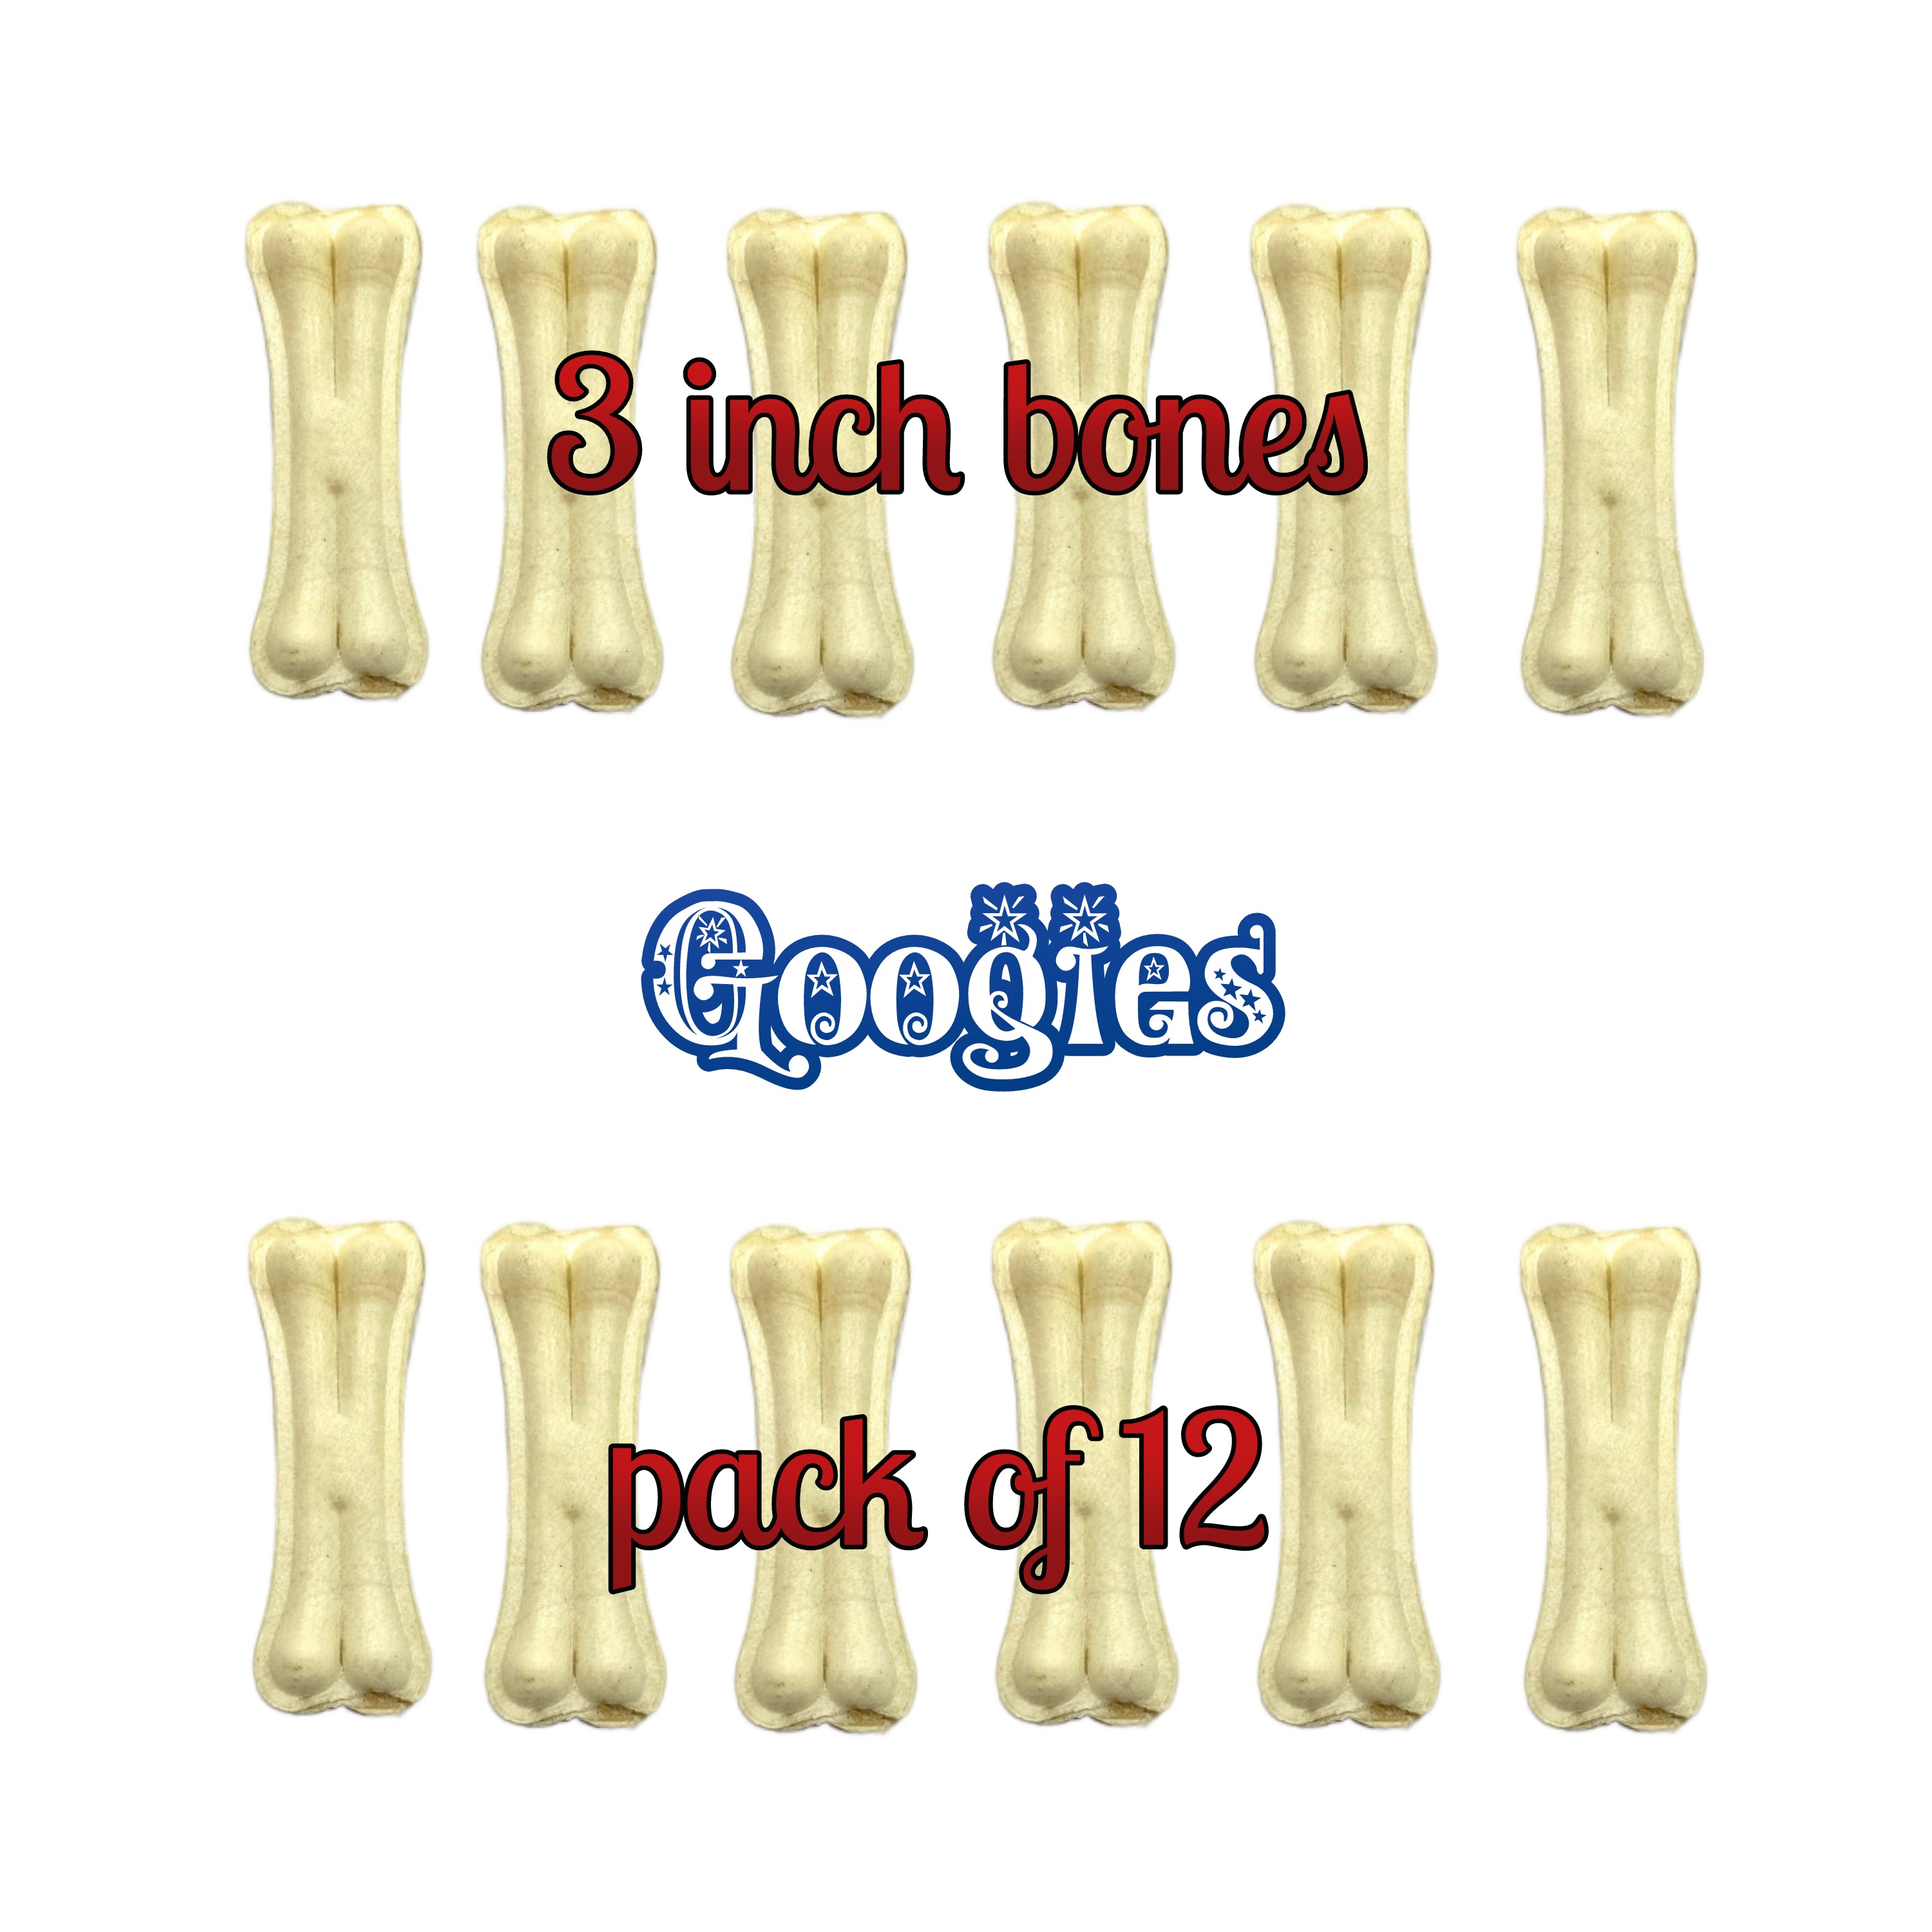 Googies Dog Chew Bones 3 inch pack of 12